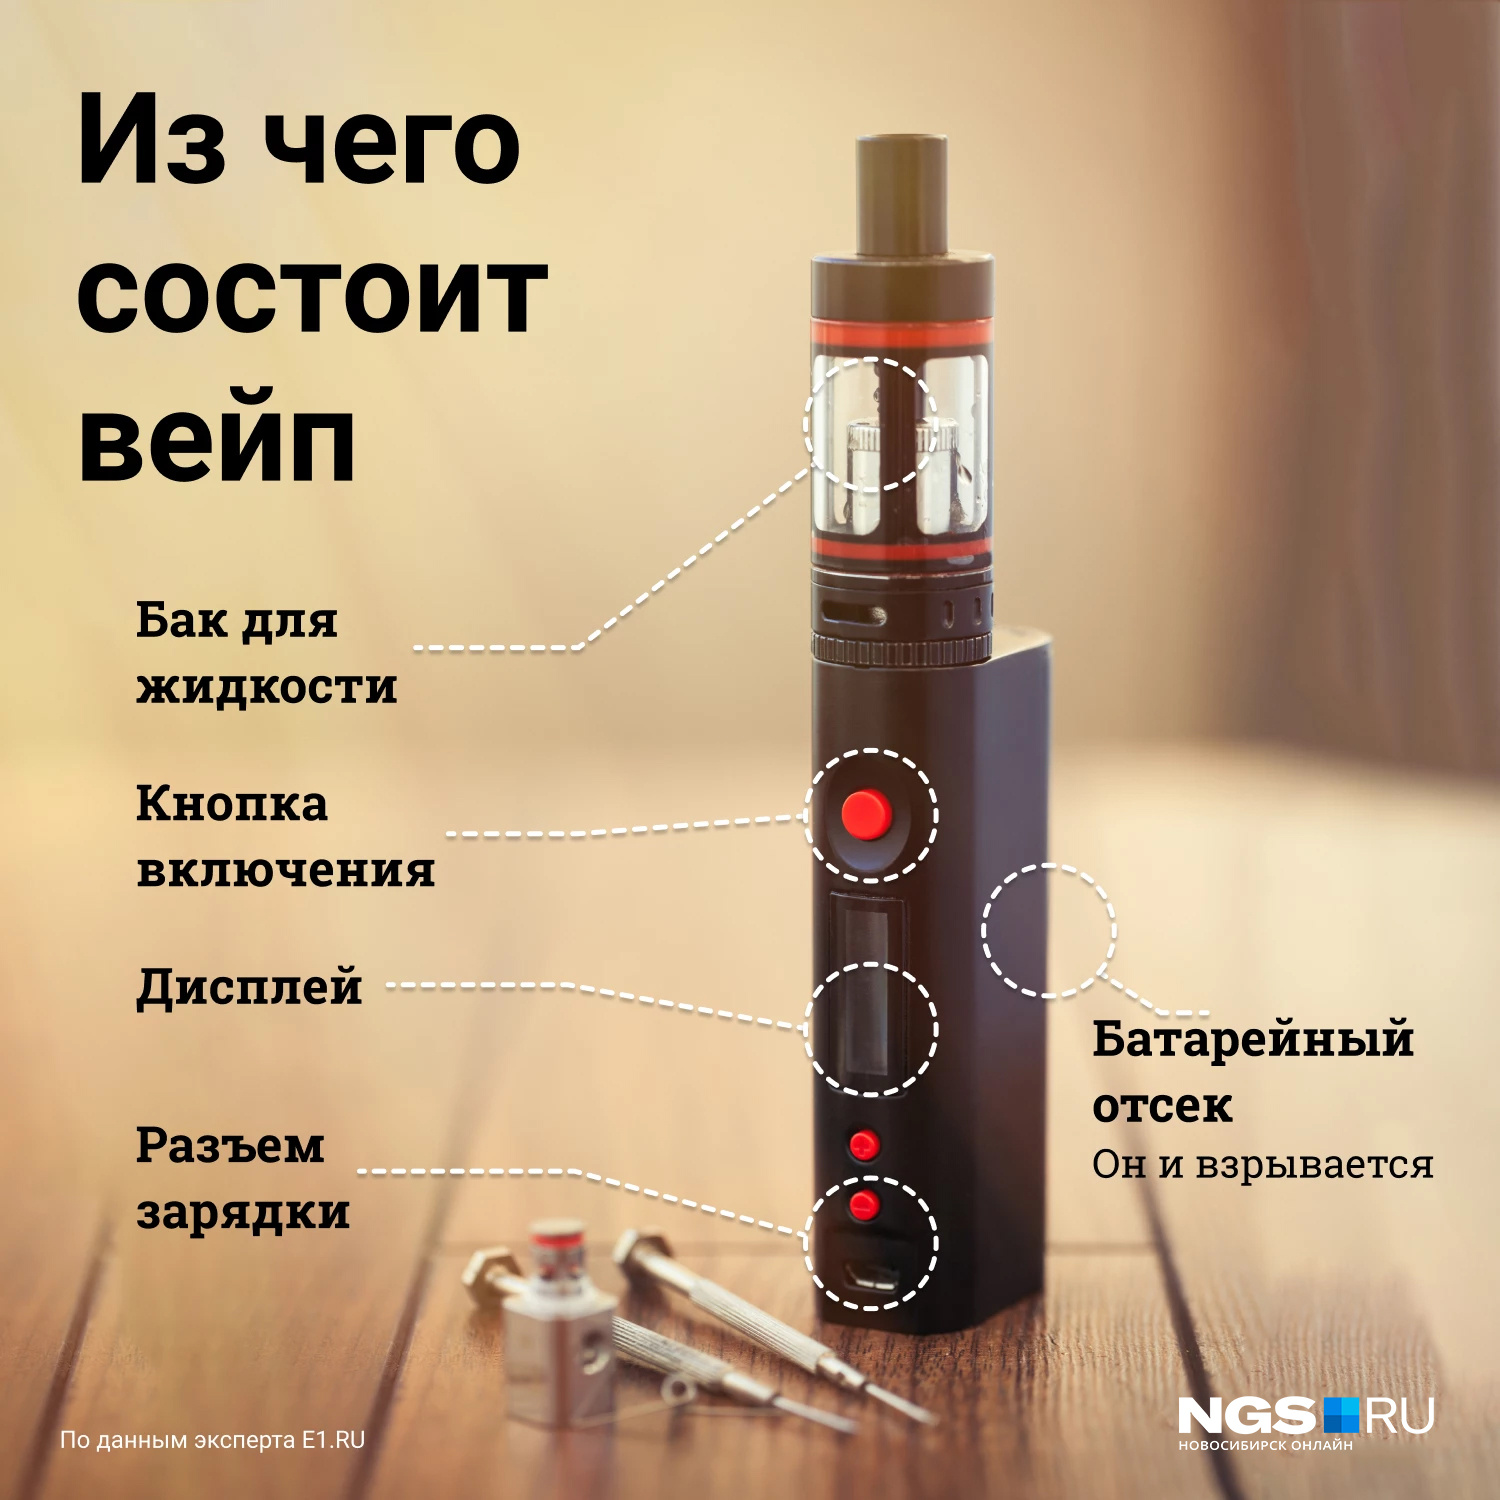 Отравление вейпами и электронными сигаретами среди подростков, вредные  вещества в вейпах, есть ли никотин в вейпах и электронных сигаретах, какие  заболевания вызывает вейпинг, март 2022 год - 9 марта 2022 - 74.ru